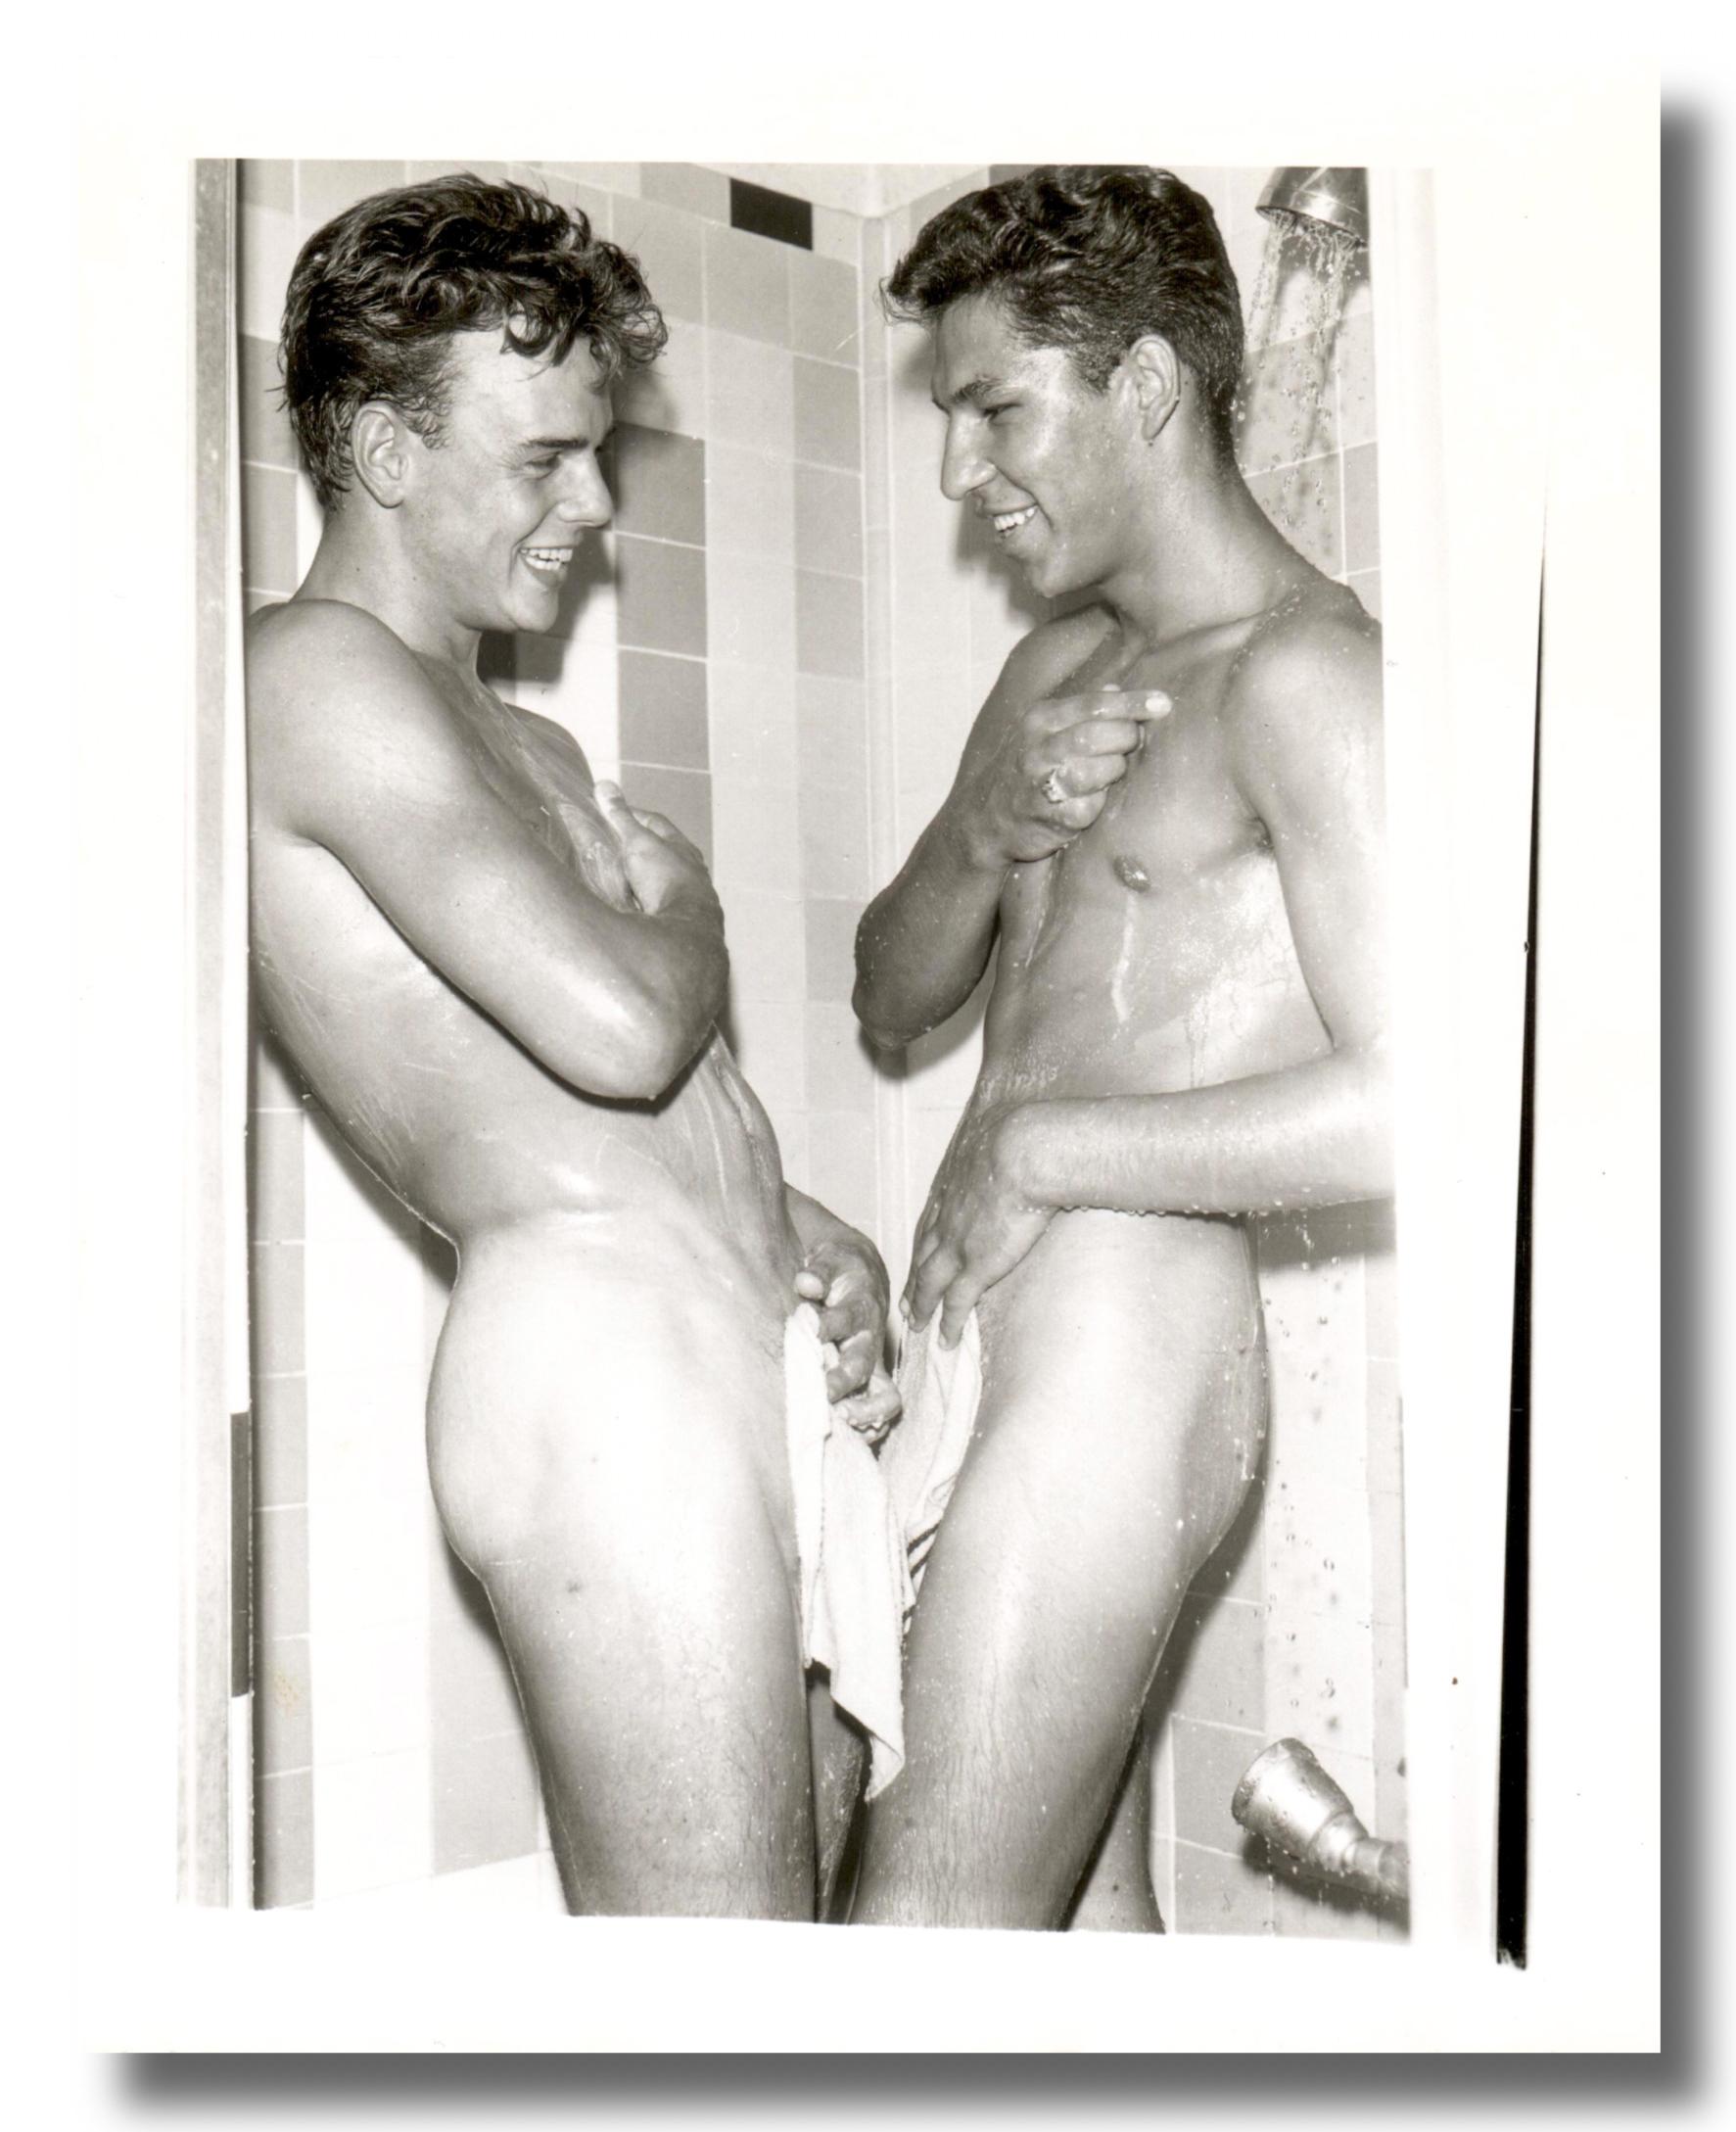 Bob Mizer Nude Photograph – 1960er Jahre Gelatine-Silberdruck - David Hockney Dusche - Originalfotografie AMG